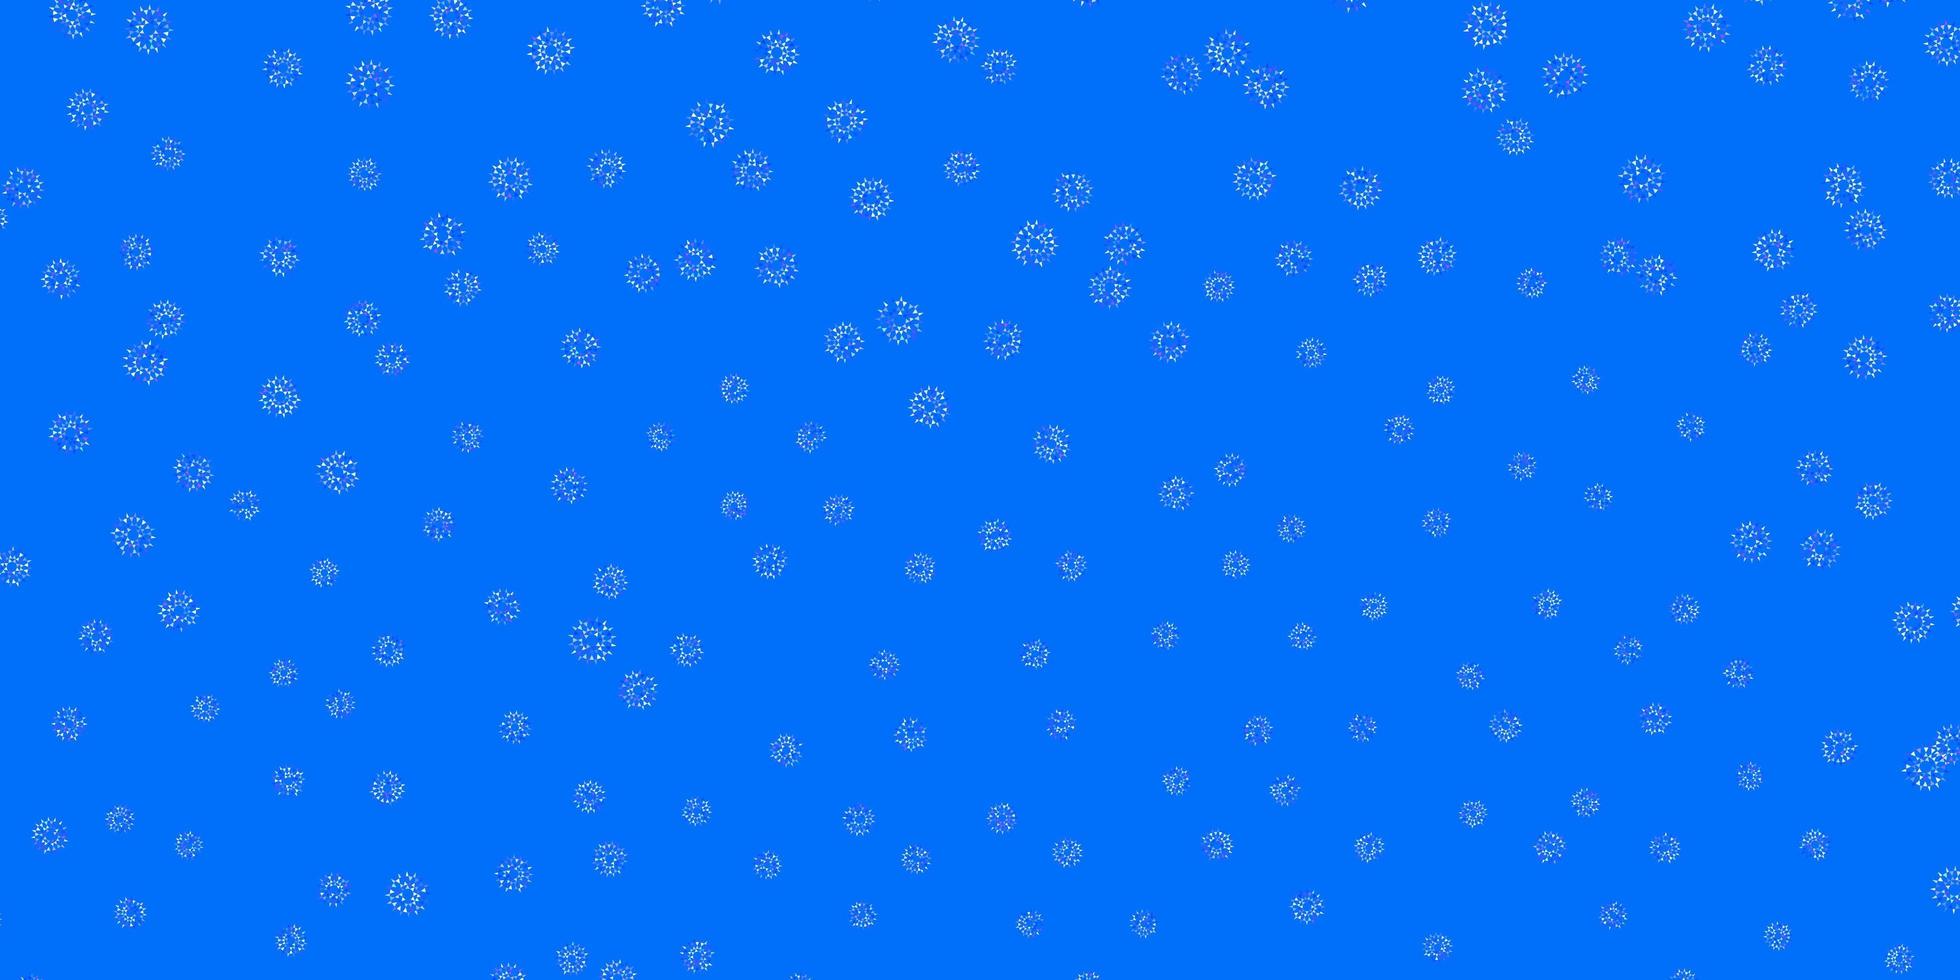 ljusrosa, blå vektor doodle mönster med blommor.